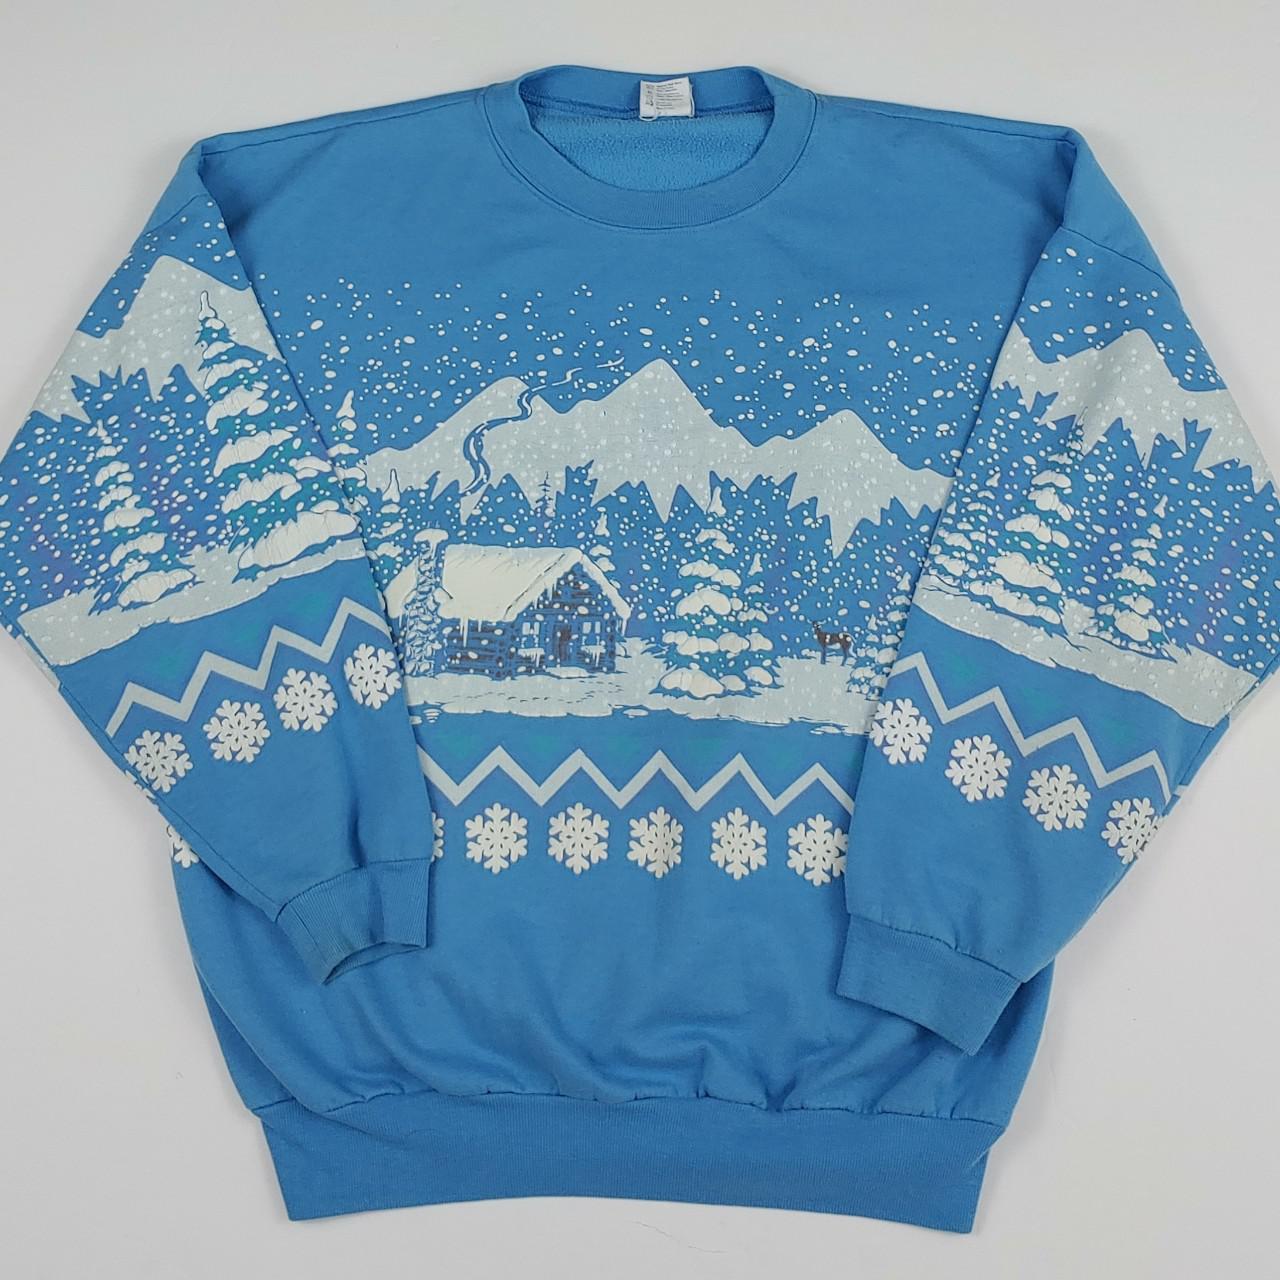 Vintage Early 1990s Winter Sweatshirt size XL